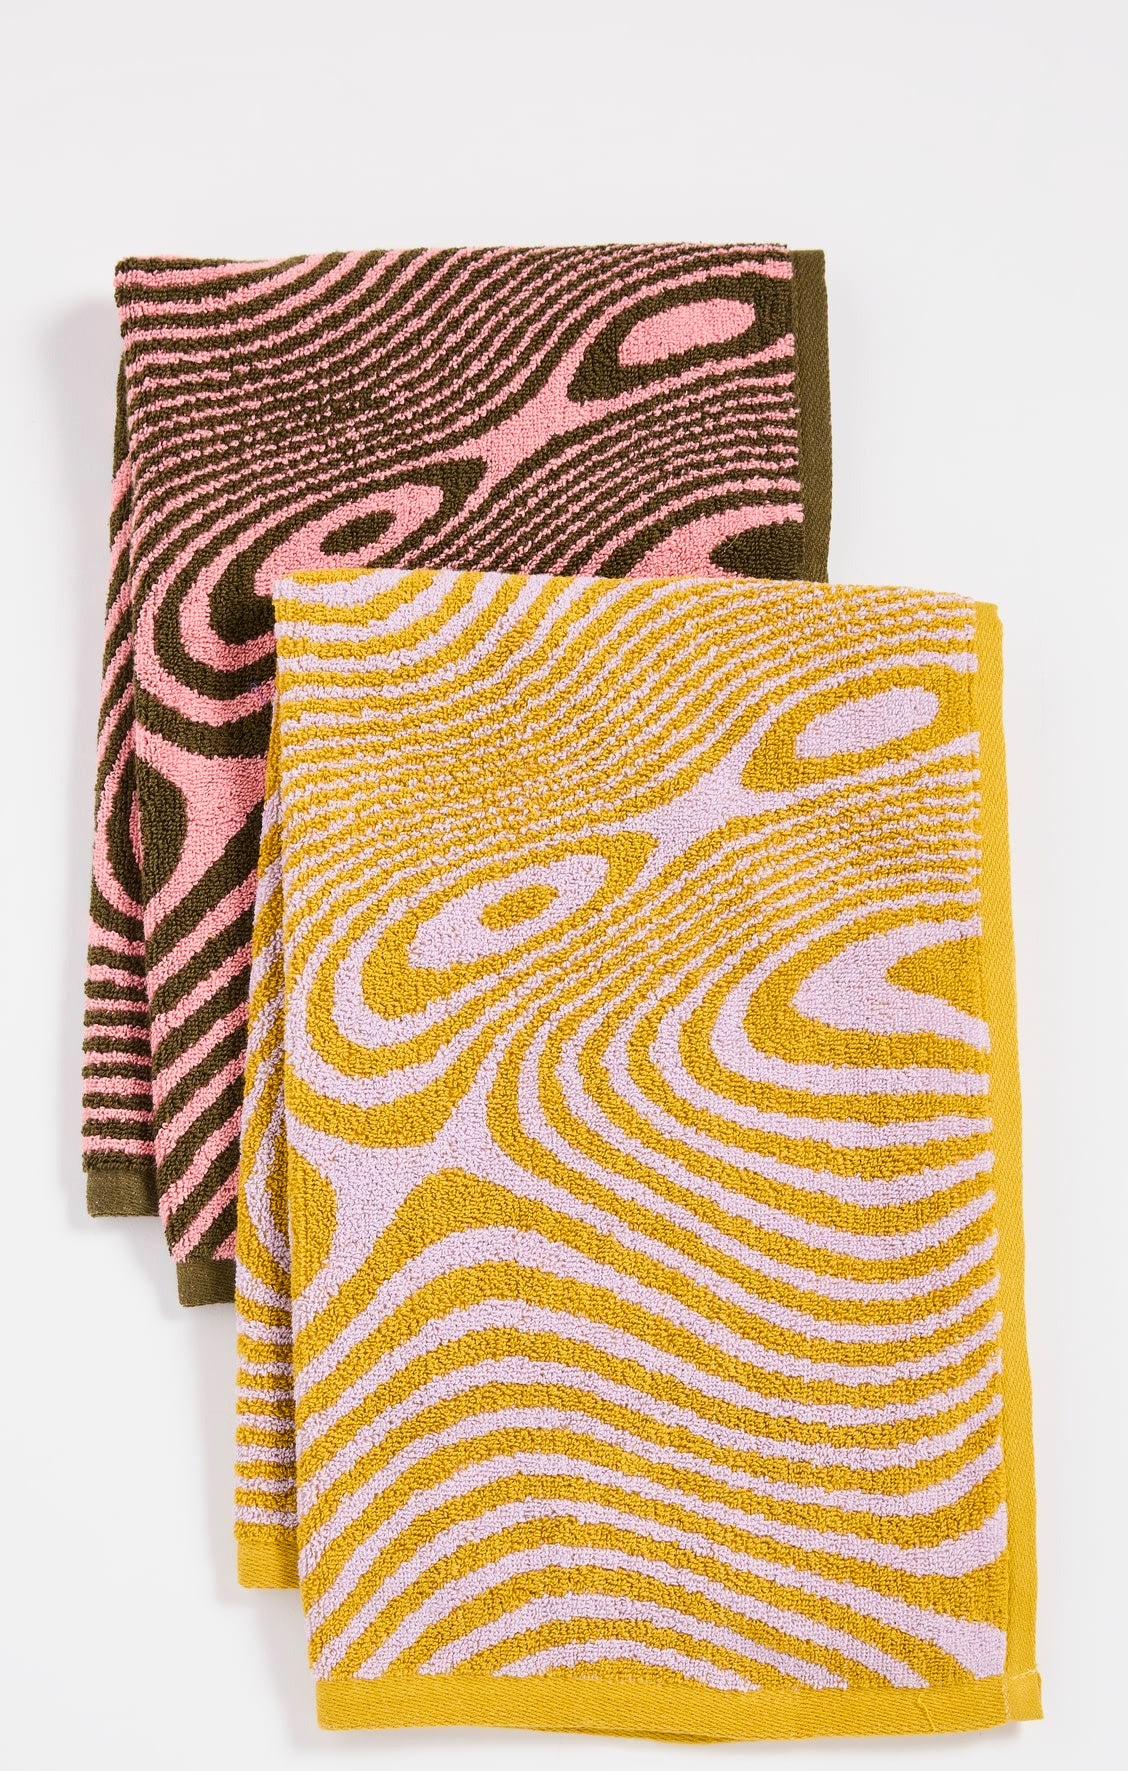 ic: Swirl print towels from Baggu